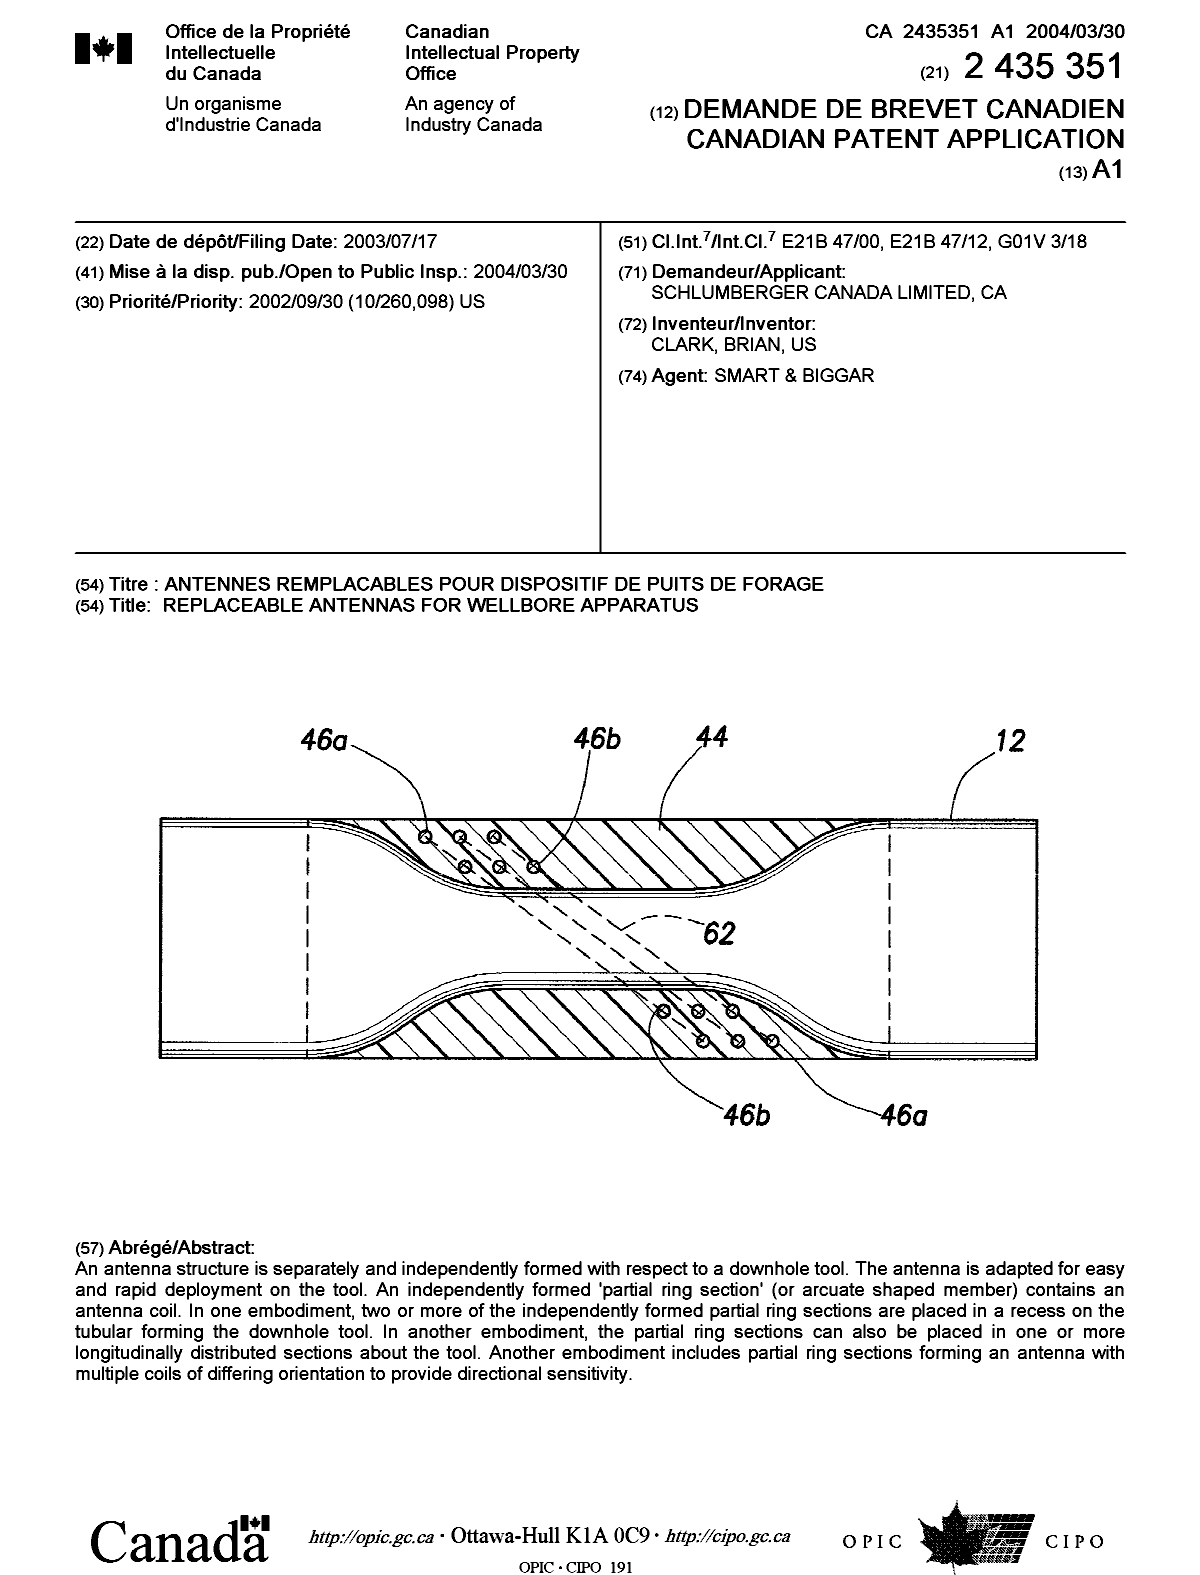 Document de brevet canadien 2435351. Page couverture 20040303. Image 1 de 1